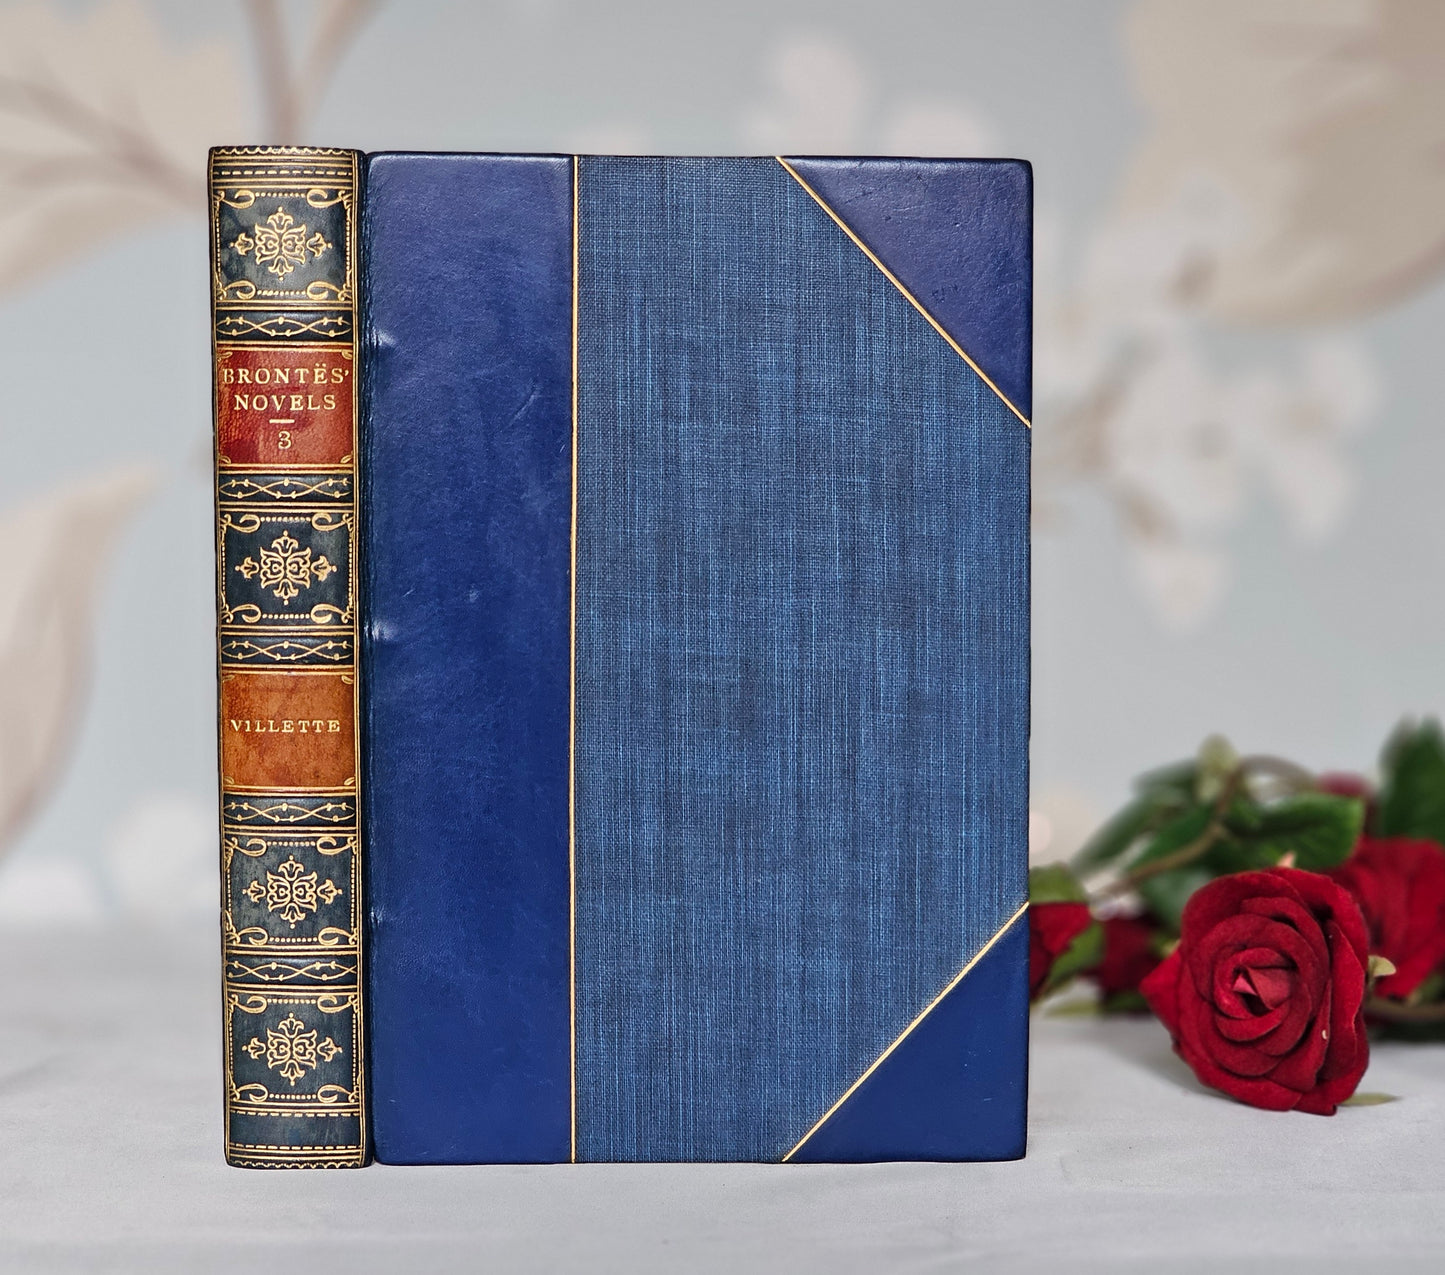 1922 Villette by Charlotte Bronte / JM Dent & Sons, London / Twelve Delightful Colour Plates by Edmund Dulac / UN-READ / Leather Binding